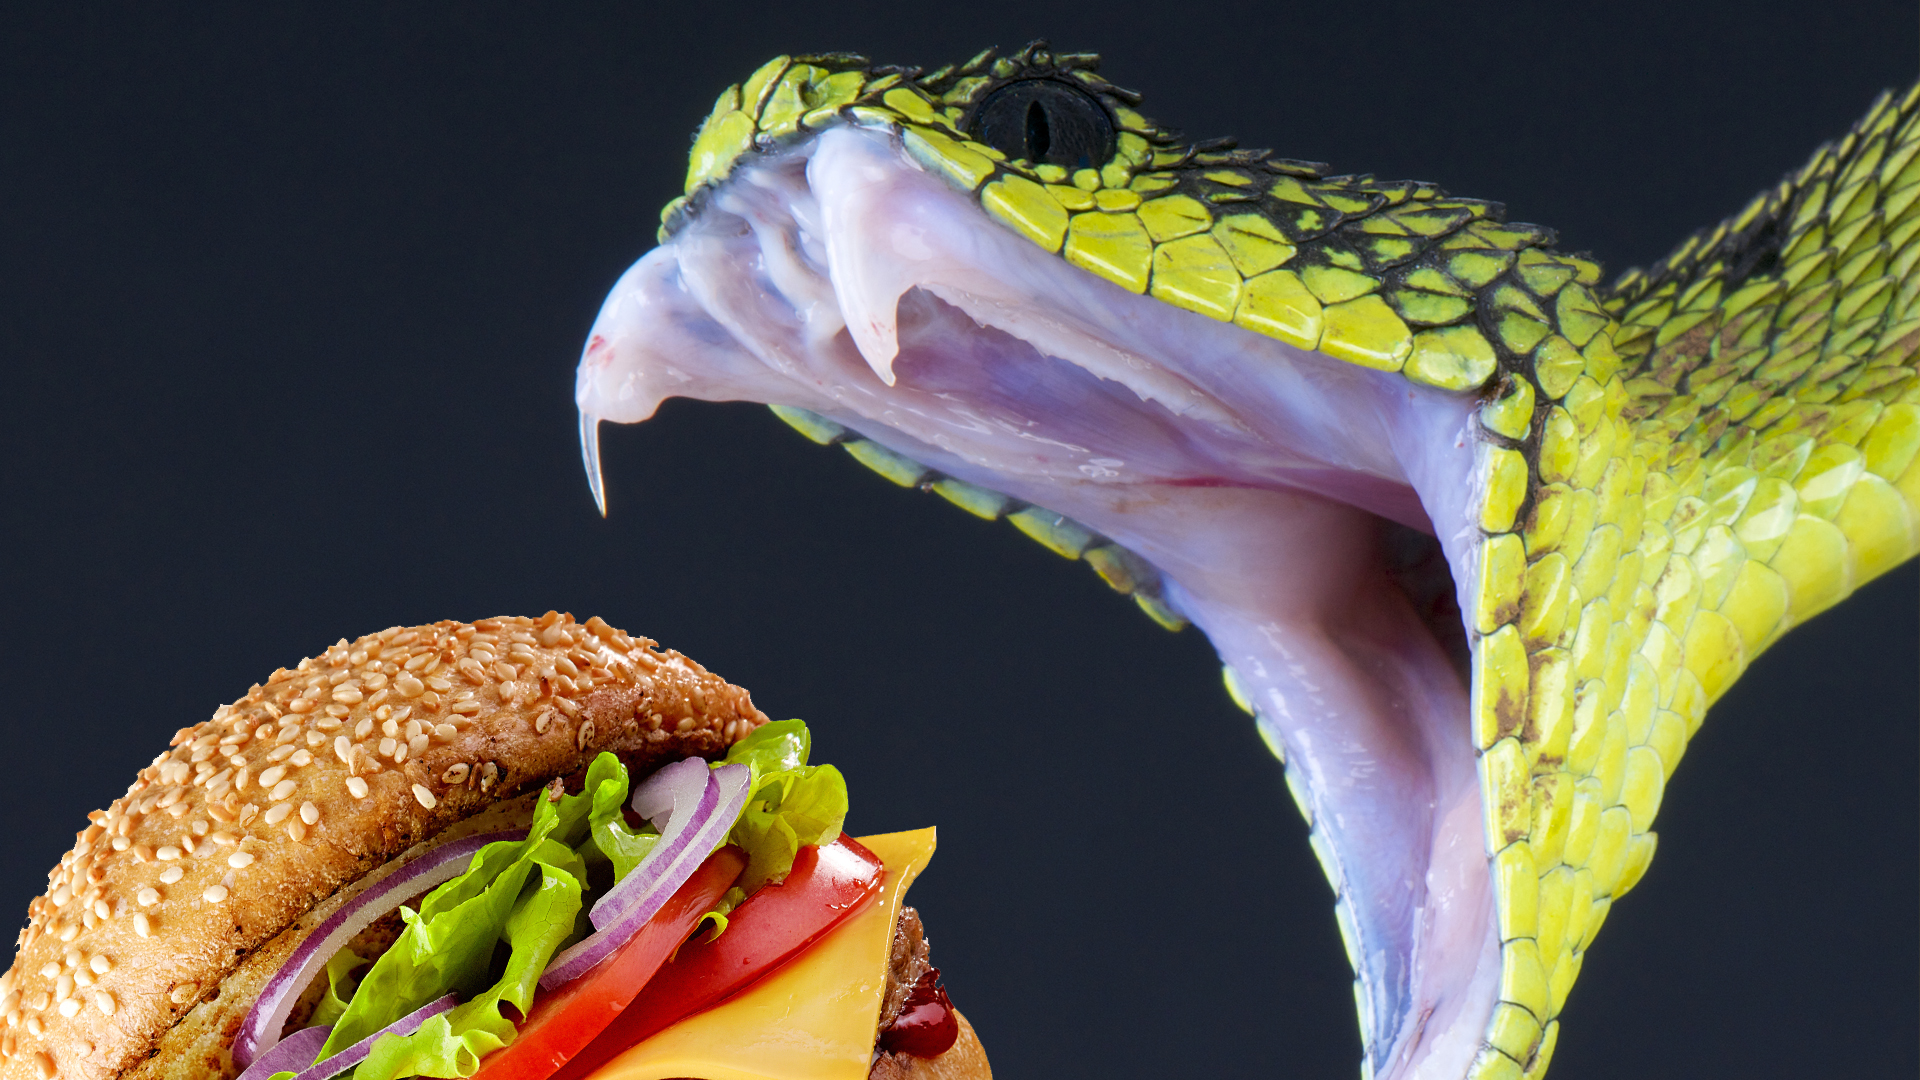 A snake biting into a hamburger